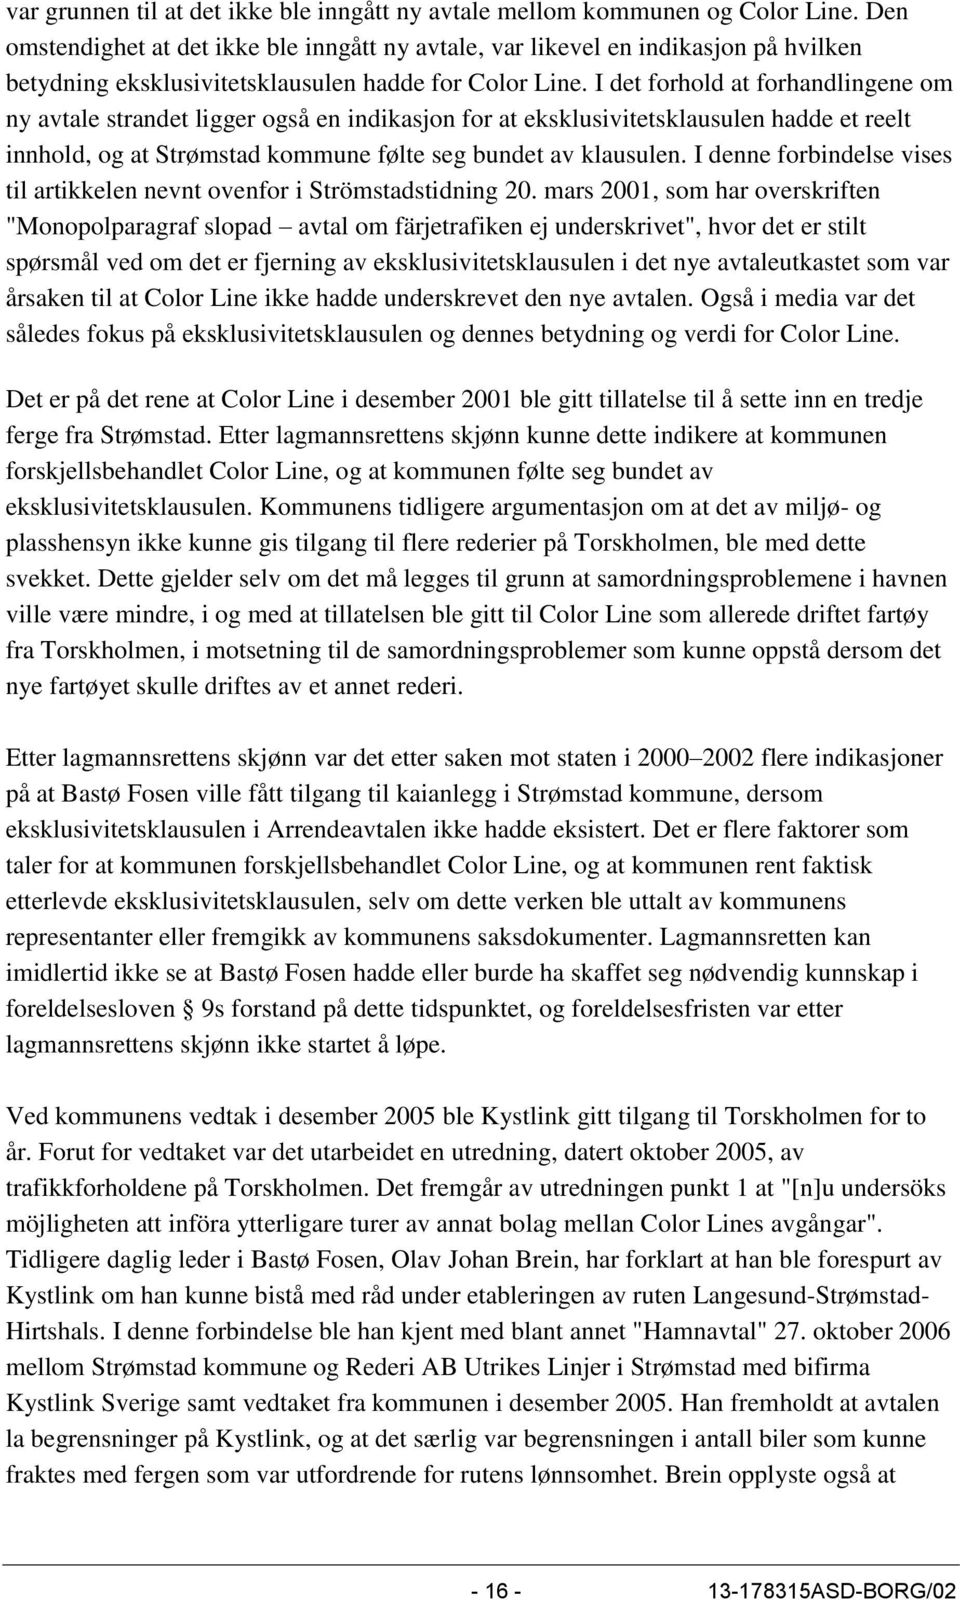 I det forhold at forhandlingene om ny avtale strandet ligger også en indikasjon for at eksklusivitetsklausulen hadde et reelt innhold, og at Strømstad kommune følte seg bundet av klausulen.